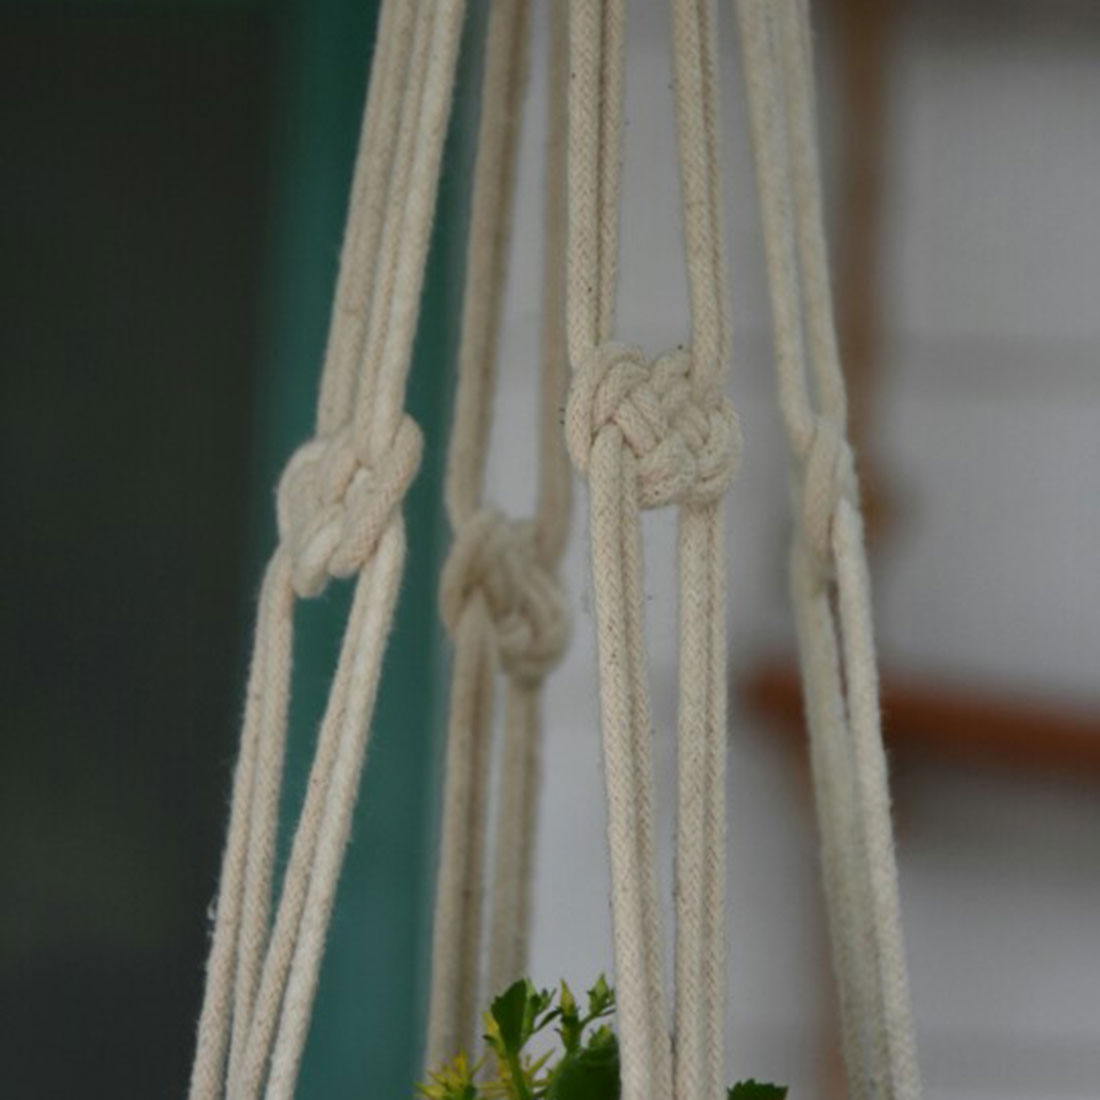 4-Legs-Hand-Knitting-Cotton-a-Flower-Pot-Holder-Hanging-Basket-Flower-Plant-Hanger-Rope-Hand-Knittin-1312480